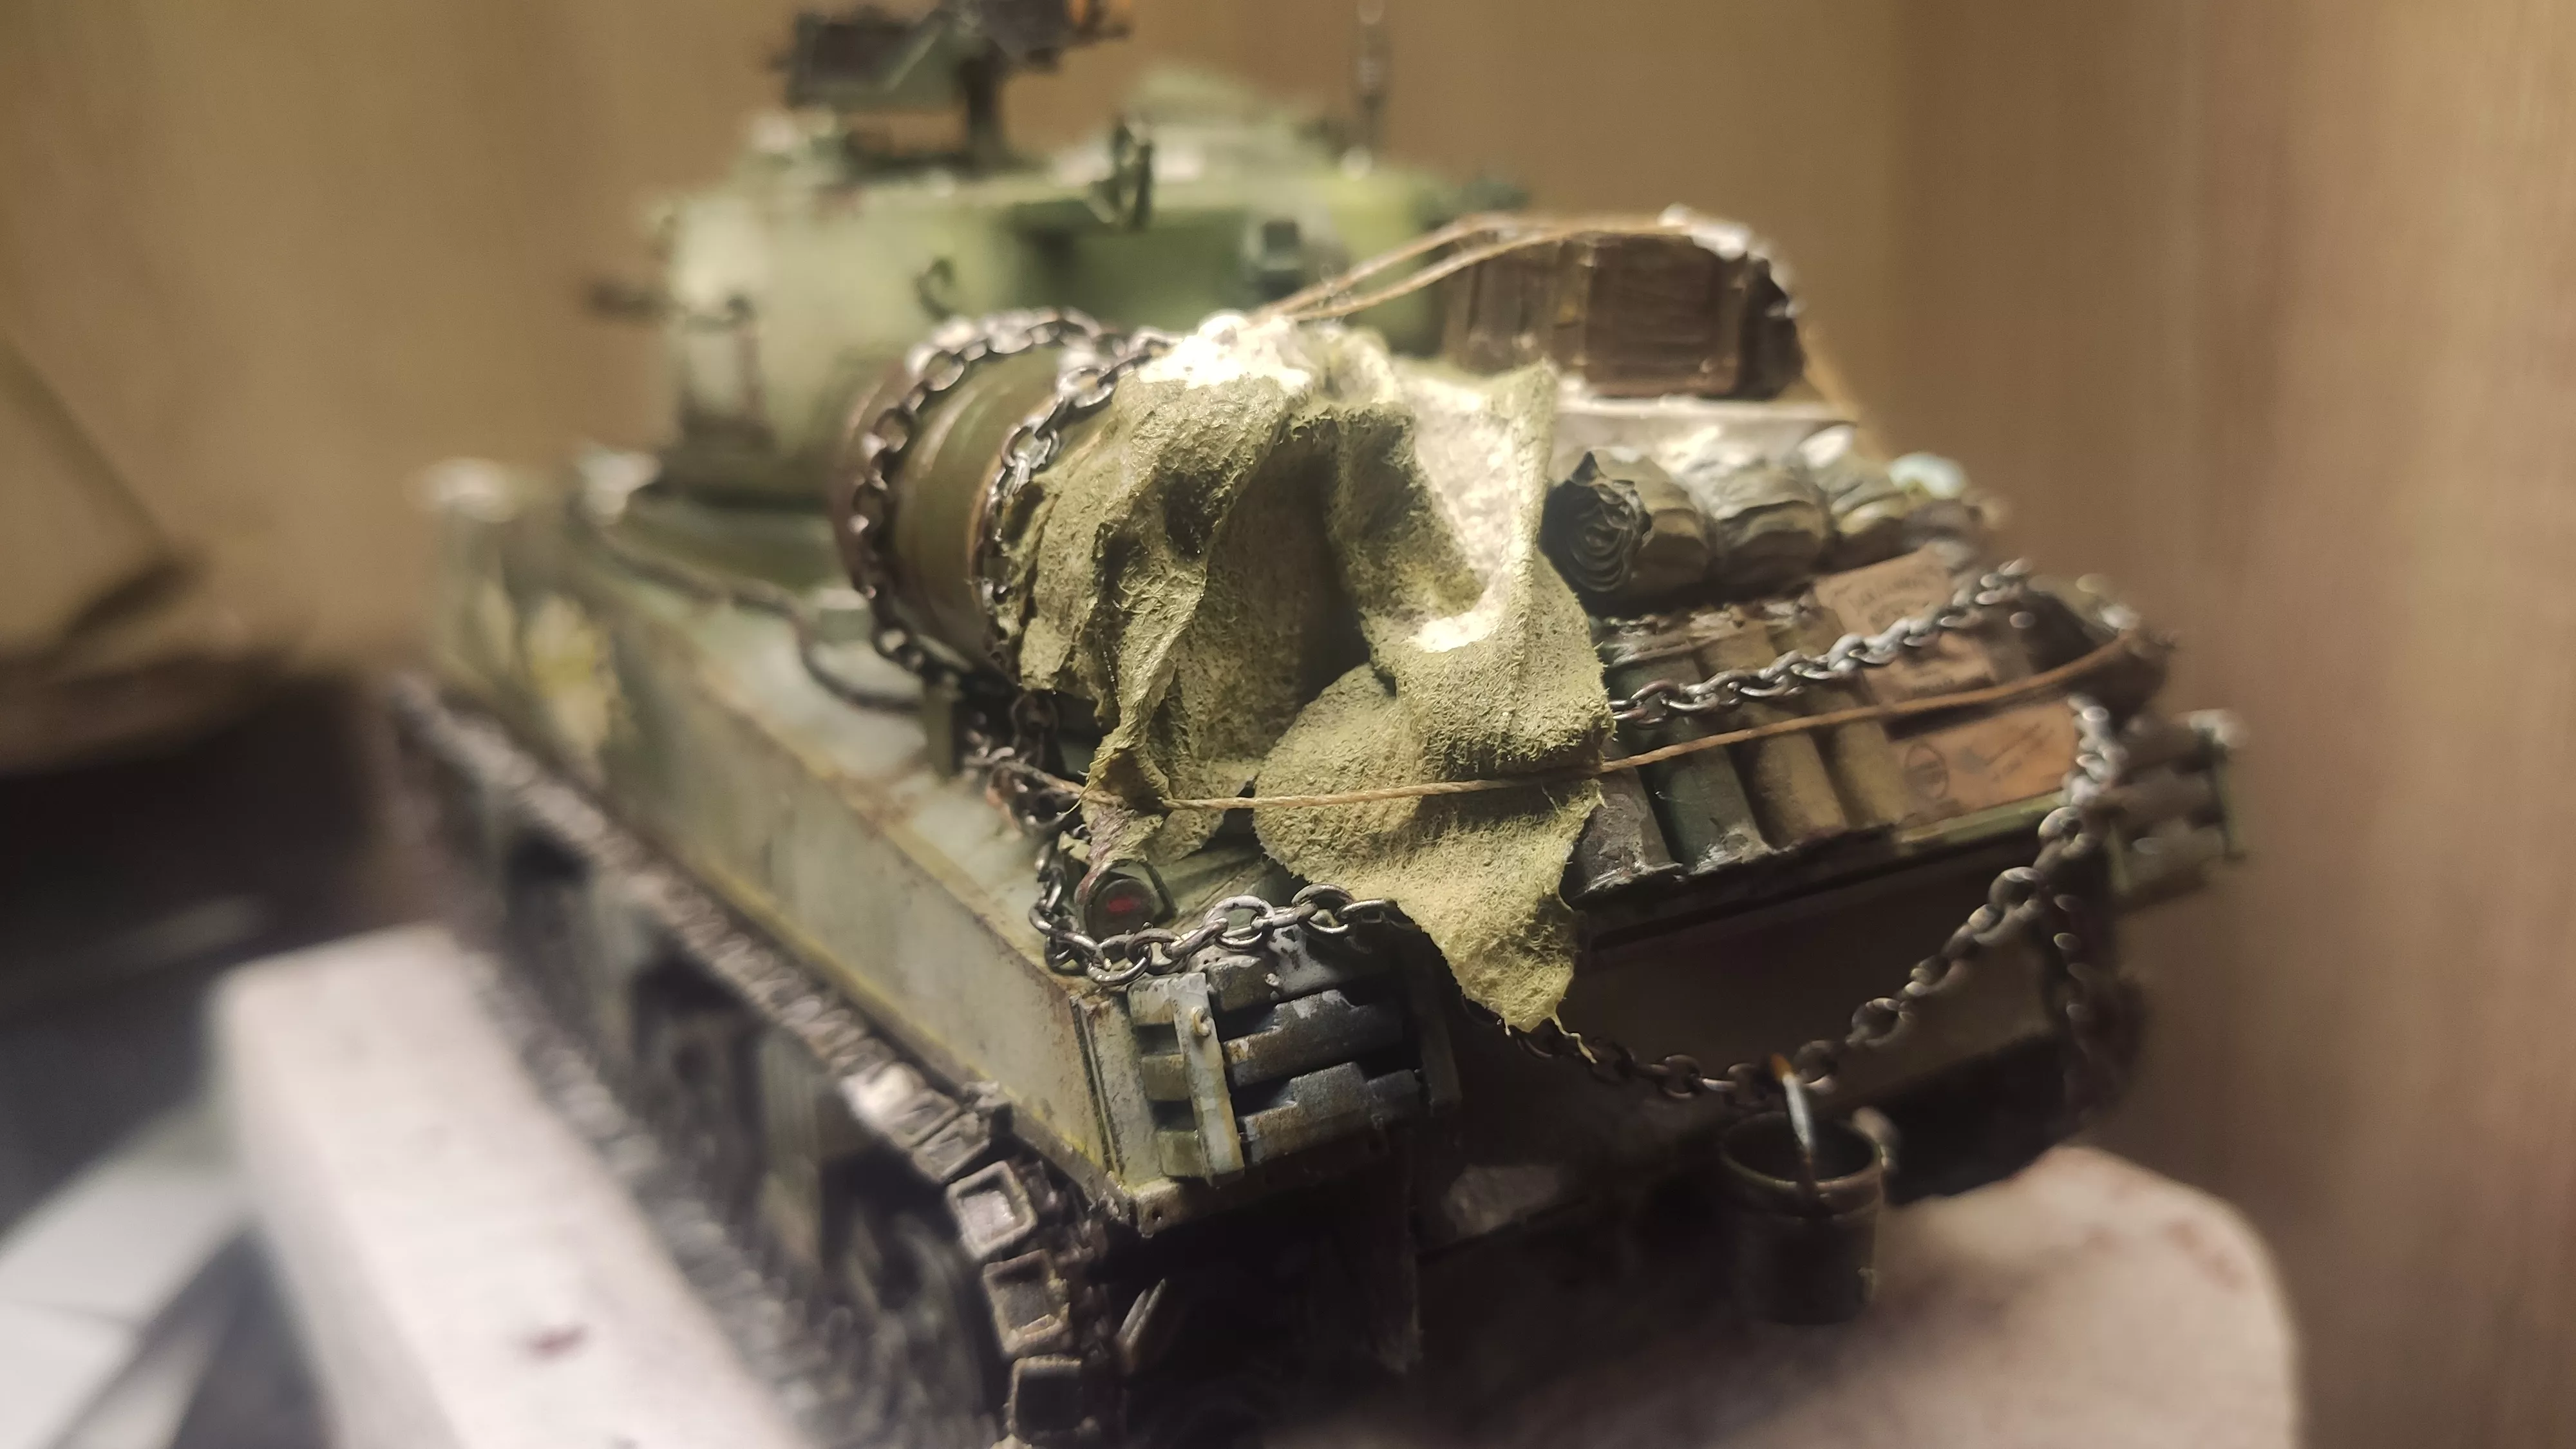 TS043 M4A3 (76) W Sherman